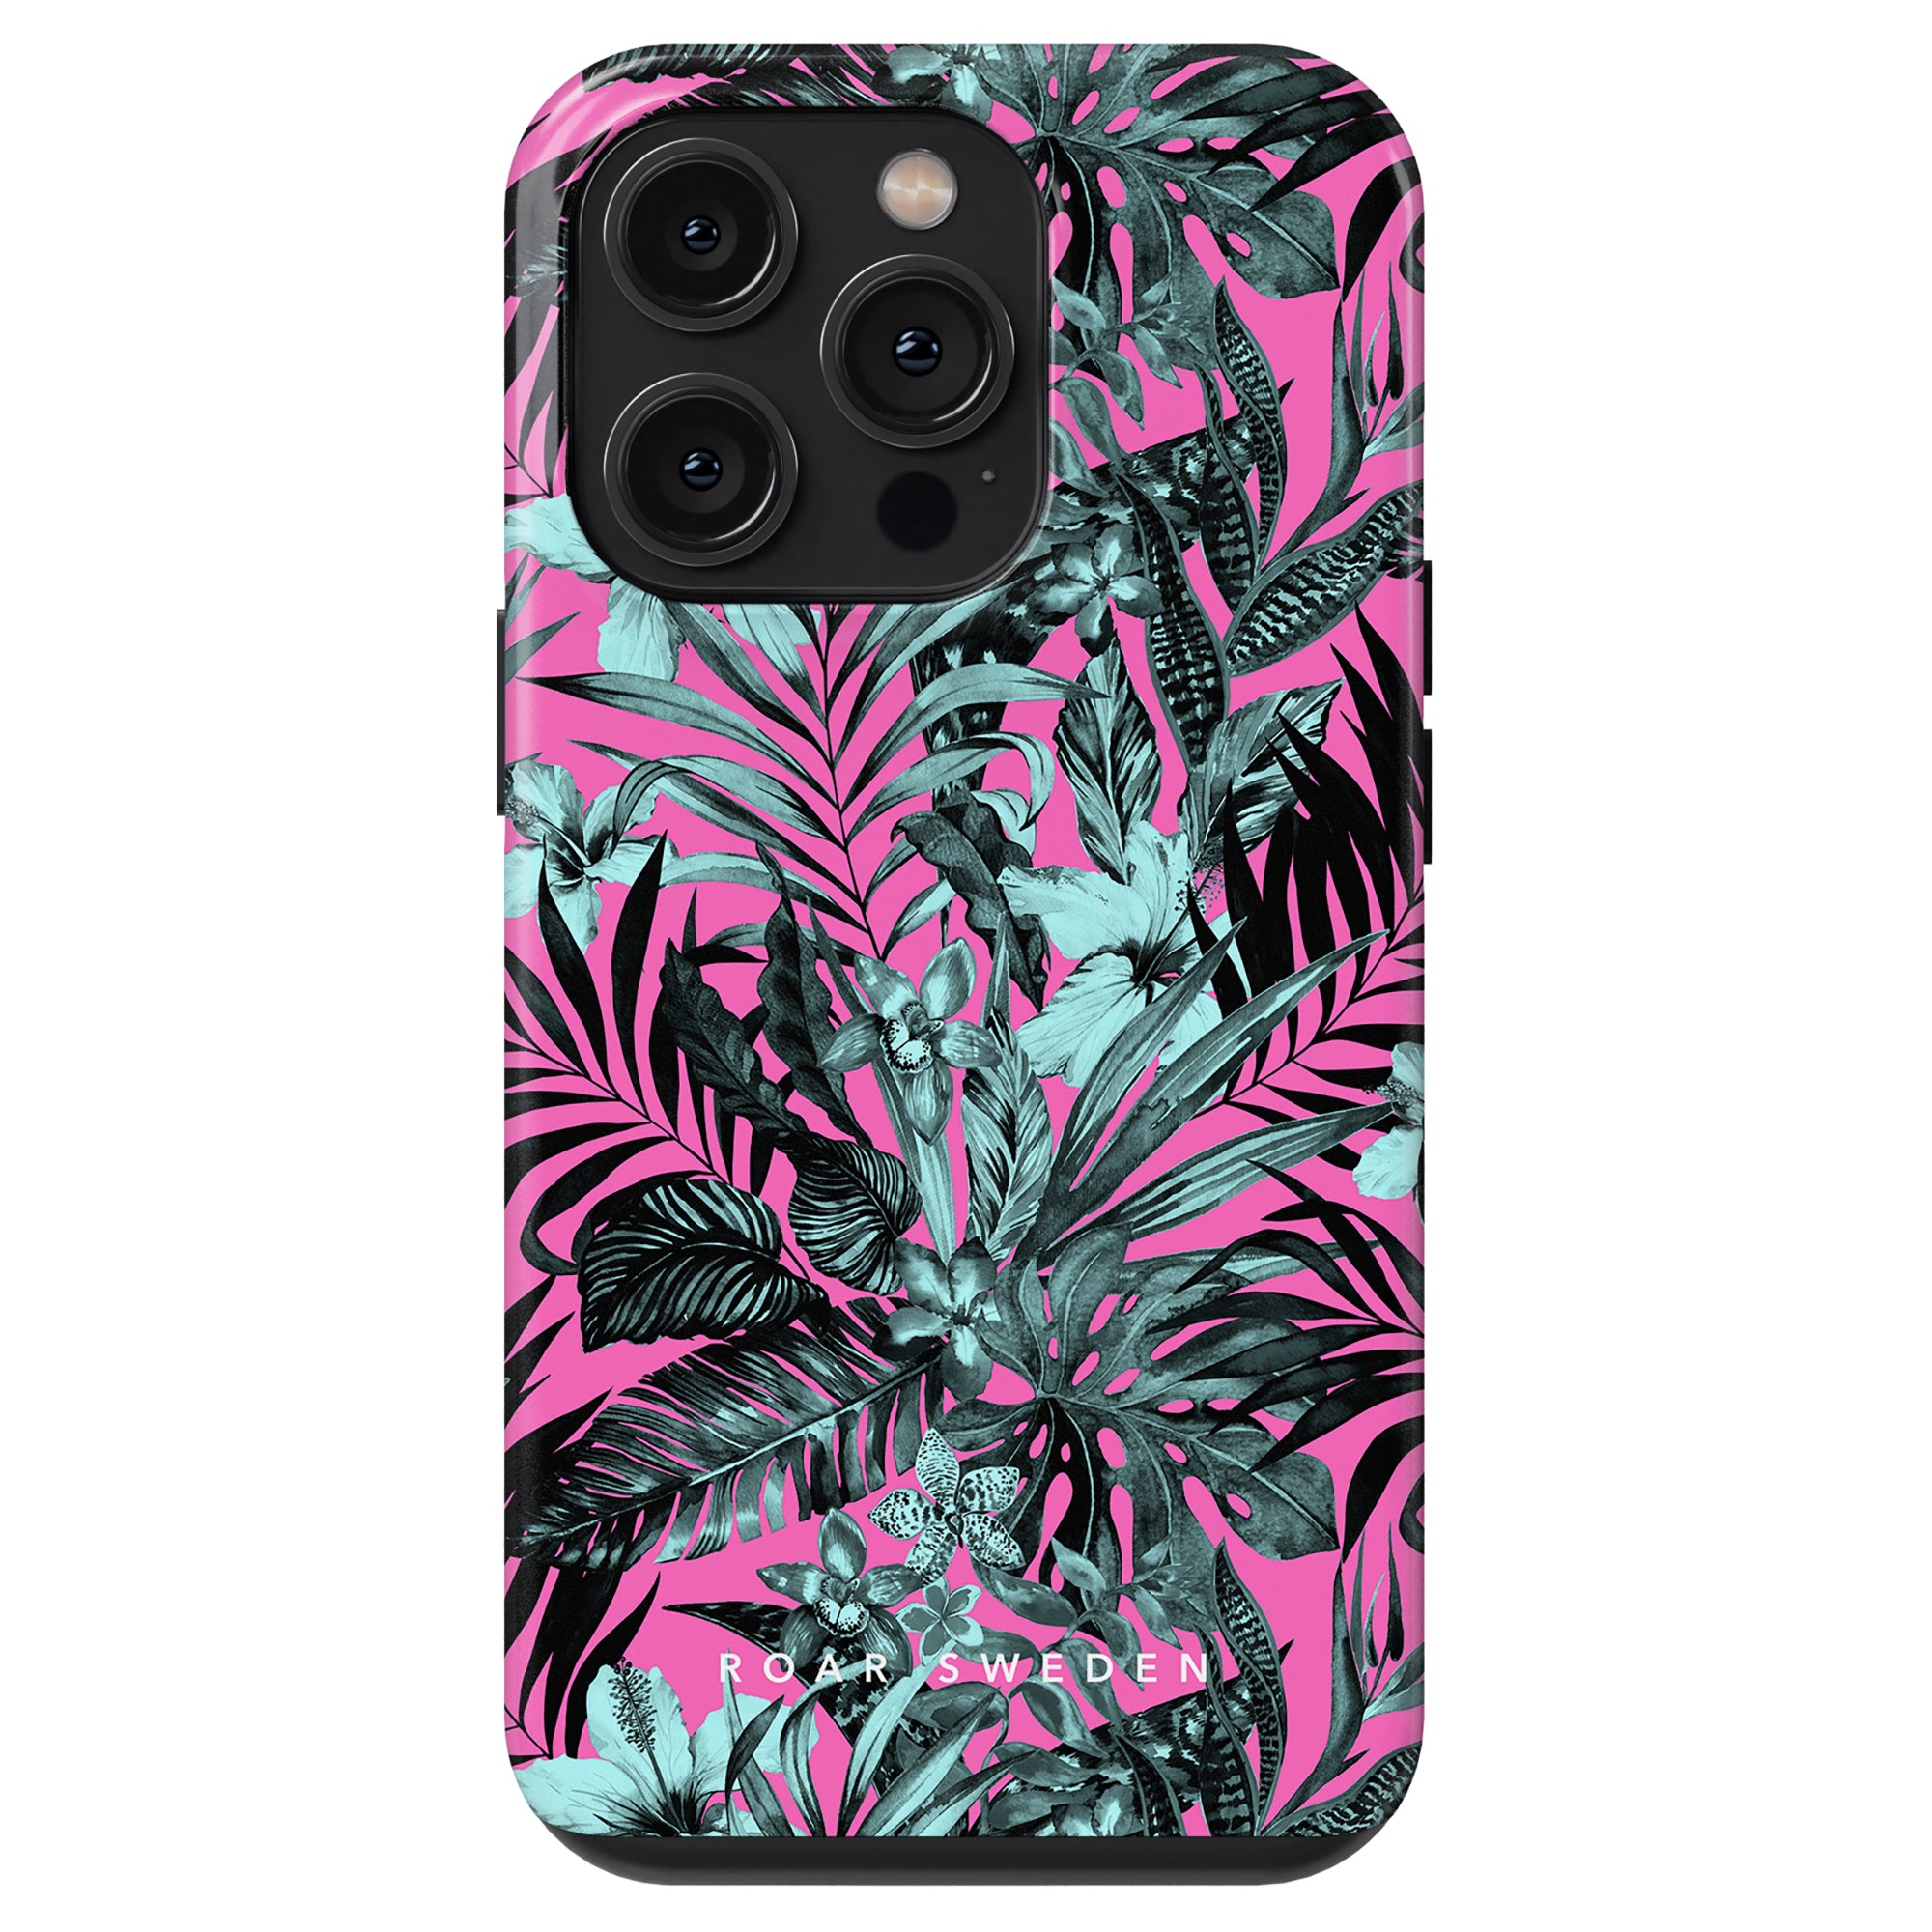 Beskrivning: Ett Pink Jungle - Tough case med tropiska blad.